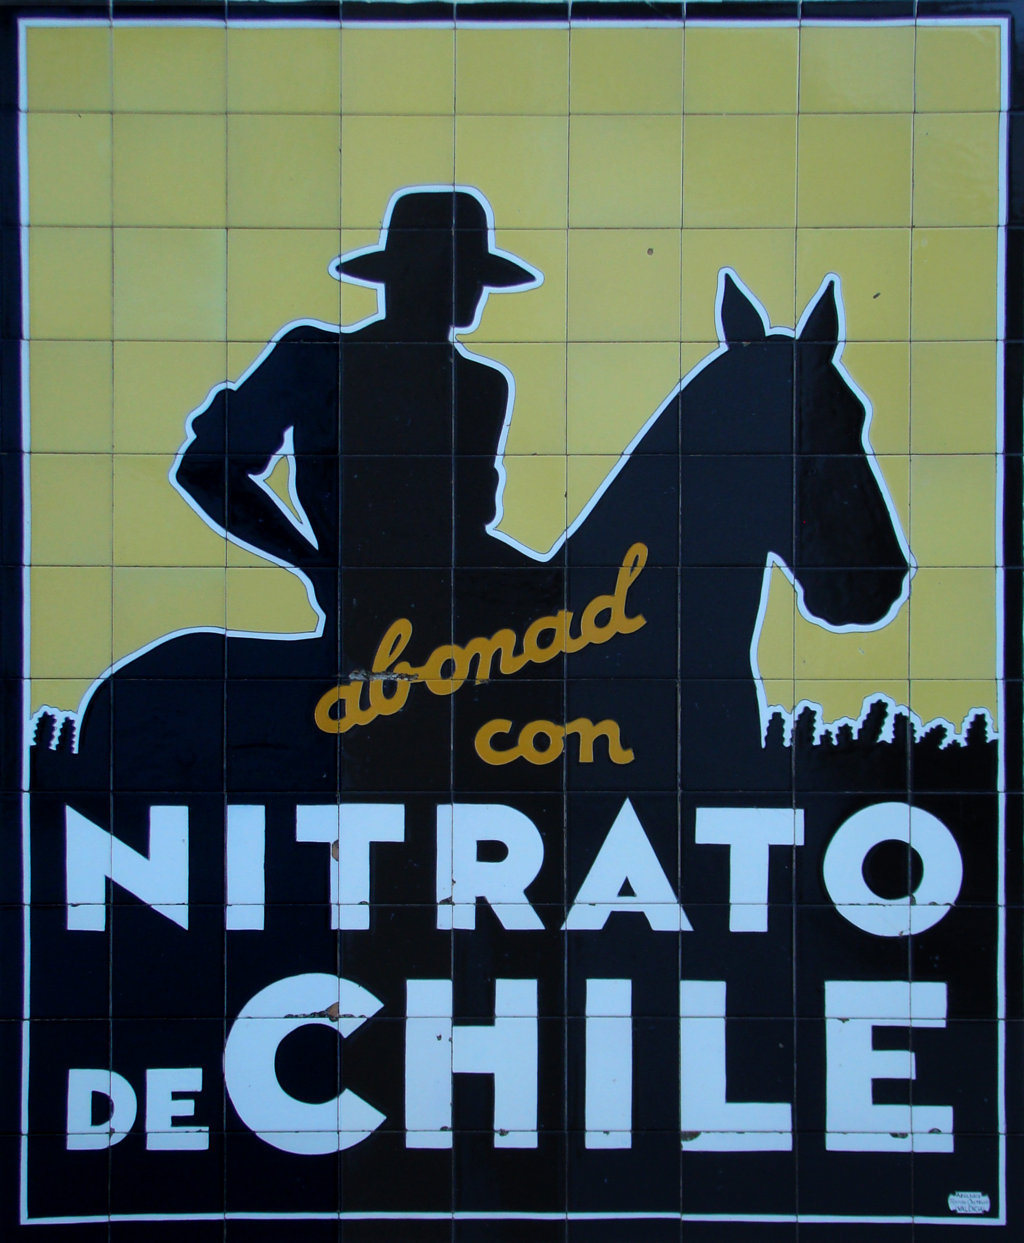 00755. Panel publicitario de Nitrato de Chile. Berja. Almería.